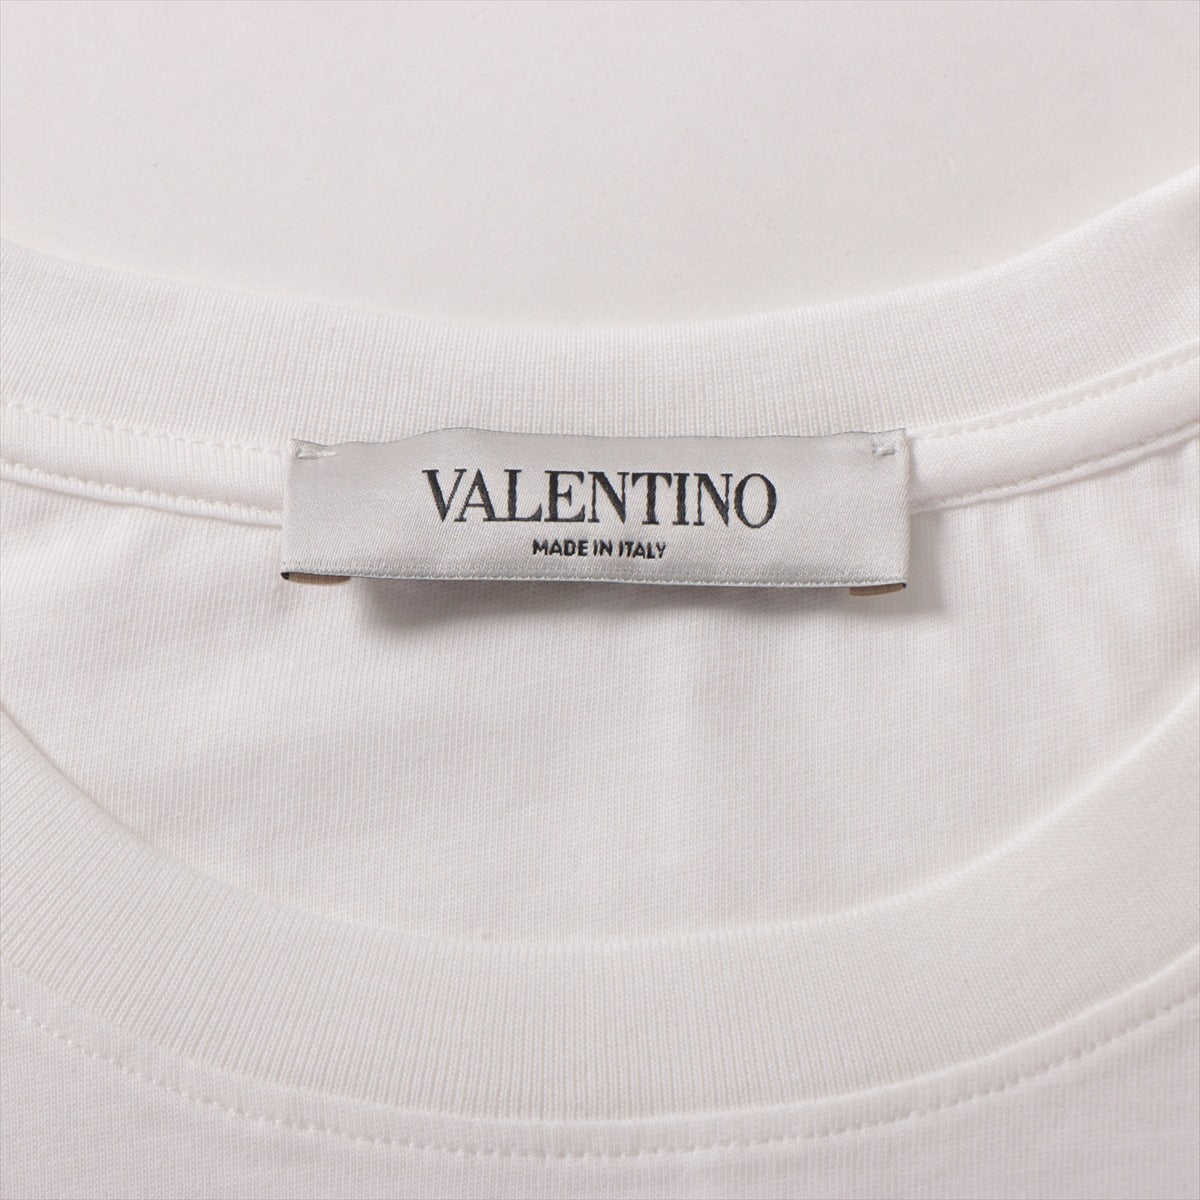 ヴァレンティノ VLTNロゴ コットン Tシャツ XS メンズ ホワイト  SB3MG07D3V6